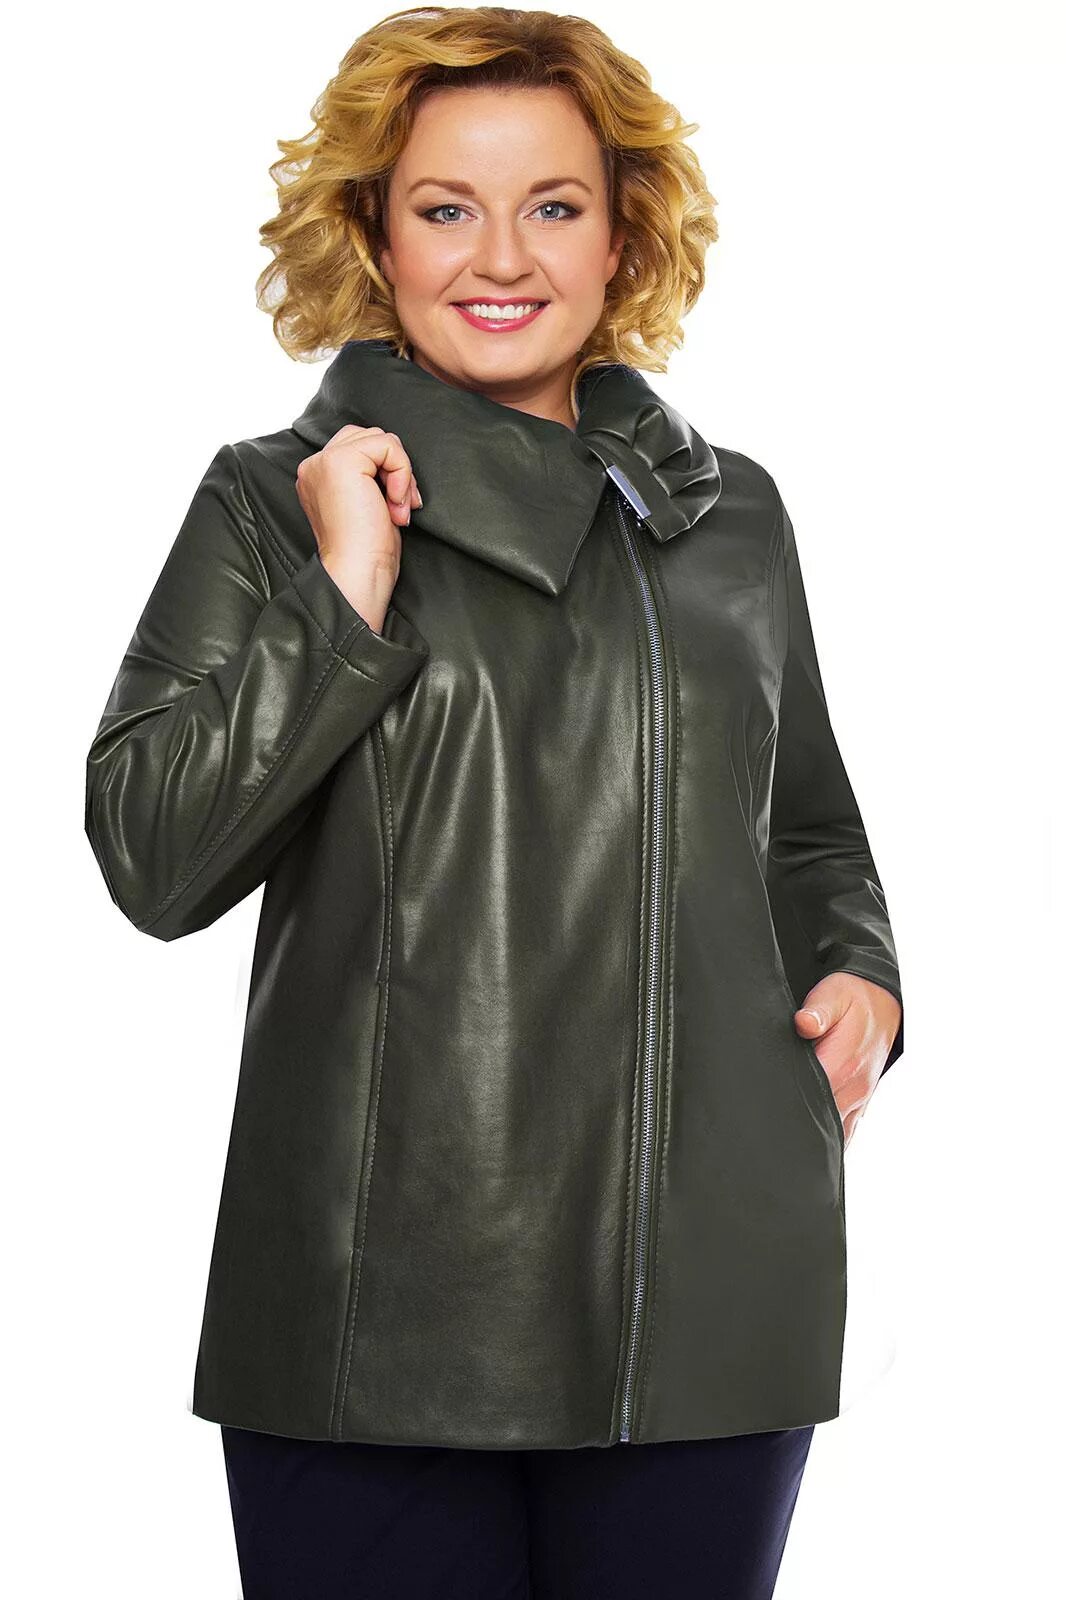 Валберис куртка женская размер 50 52 демисезонная. Куртки для полных женщин. Куртки женские для полных. Стильные куртки для полных женщин.